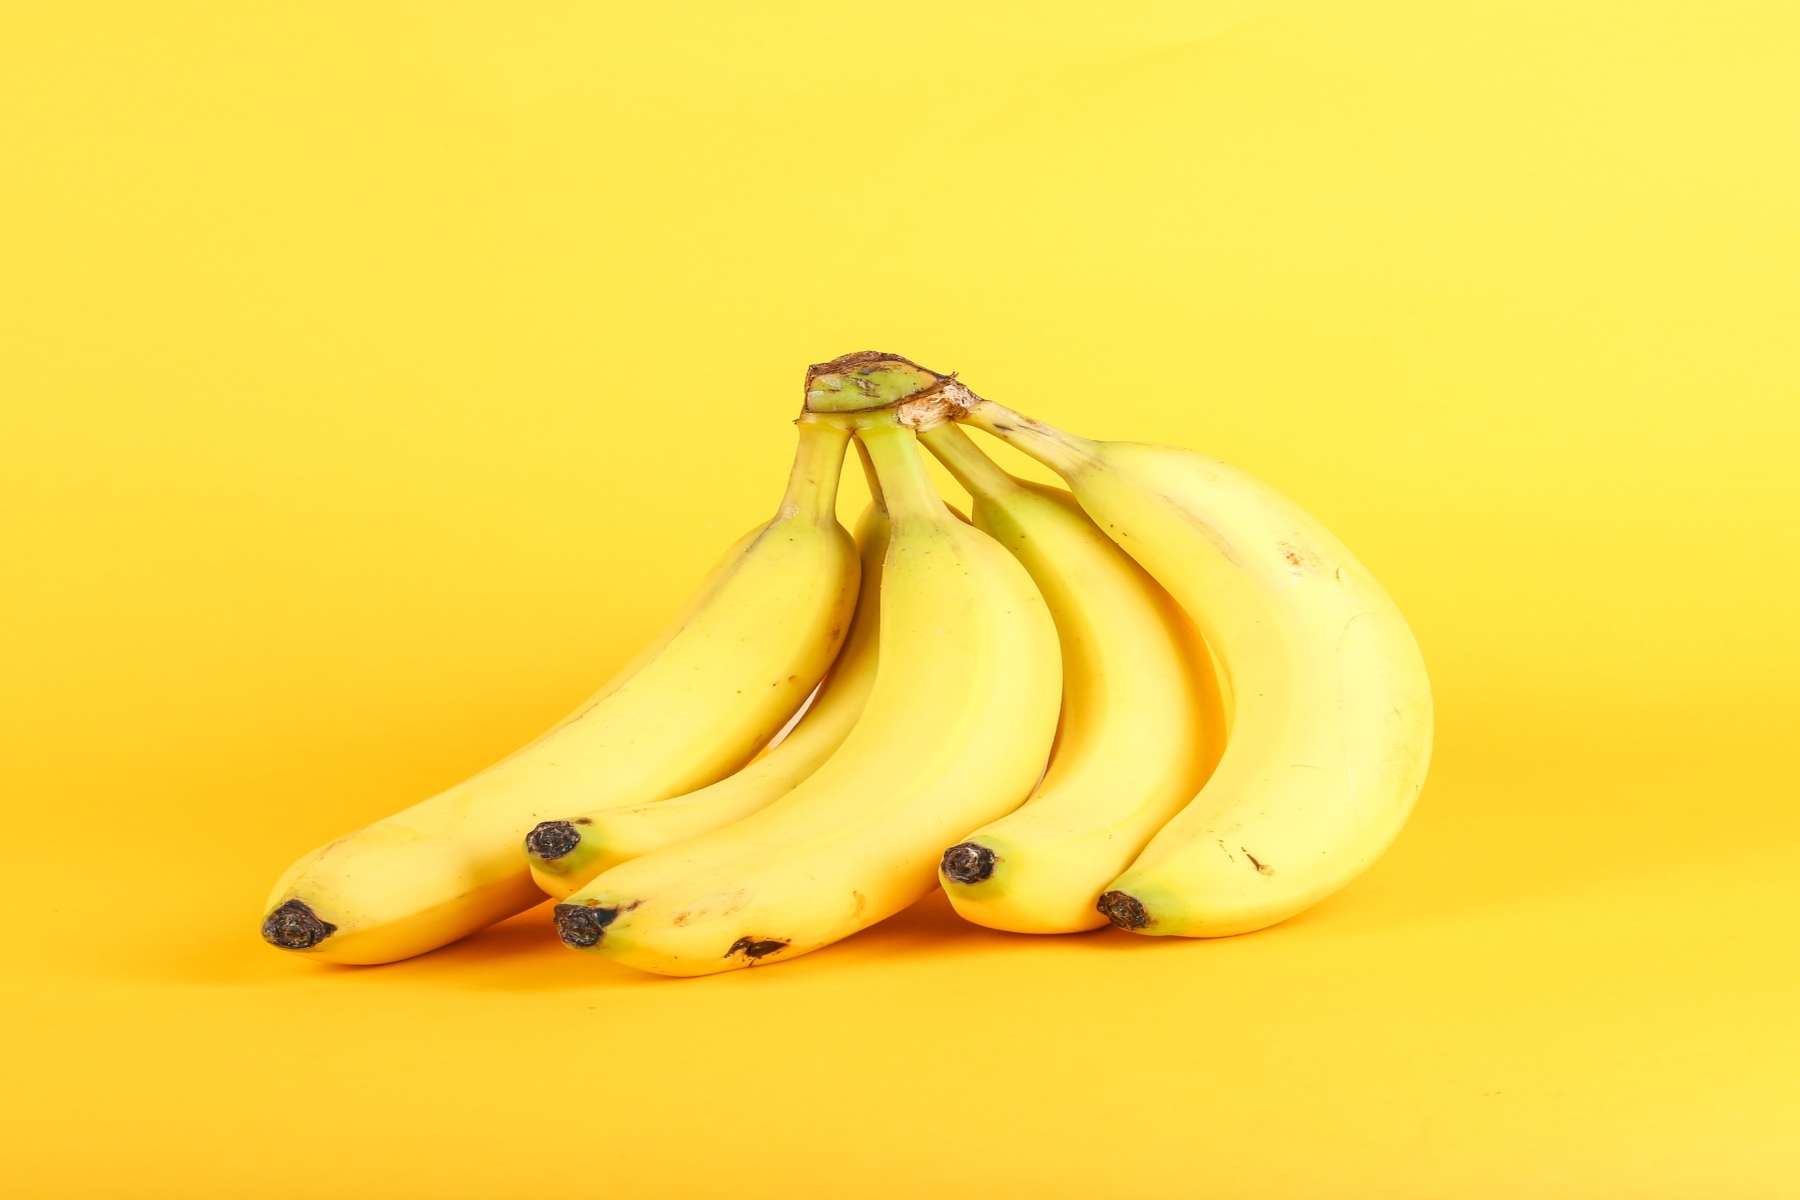 Μπανάνα θερμίδες: Πόσες θερμίδες μπορεί να έχει μία μπανάνα; Είναι κακή για εμάς;